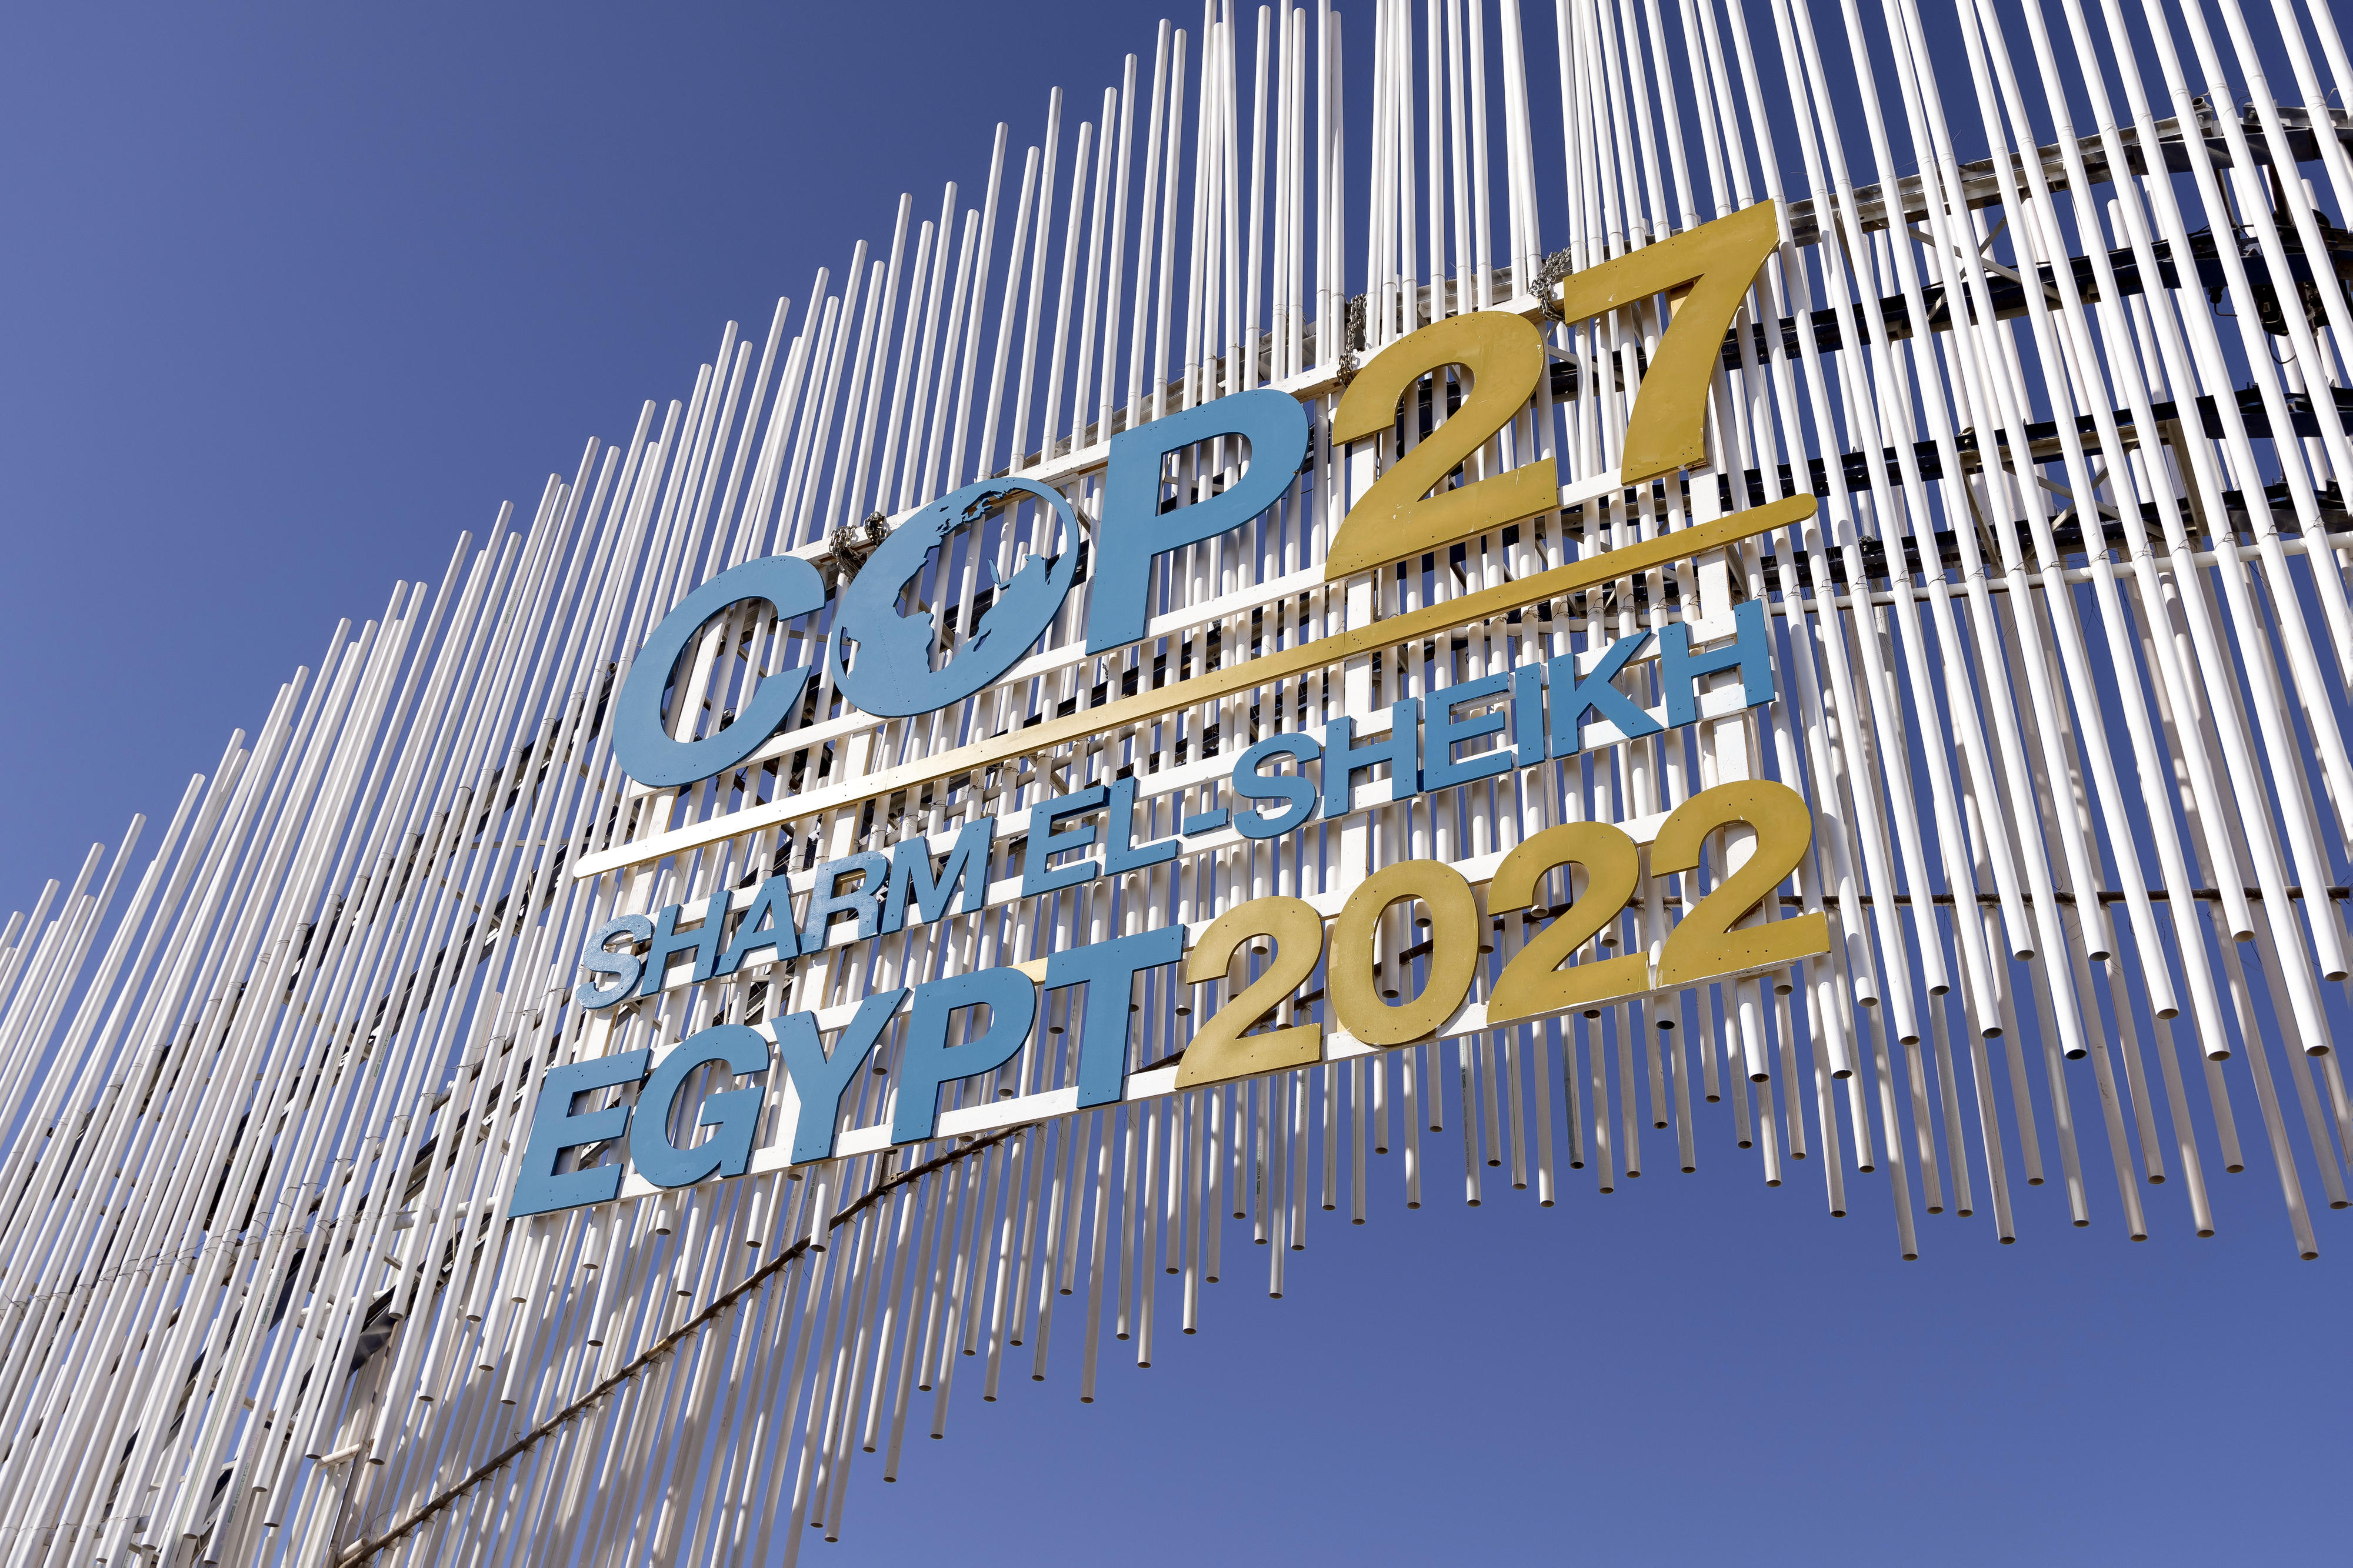 Veranstaltungsgebäude mit Schriftzug: COP27 Sharm El-Sheikh, Egypt 2022